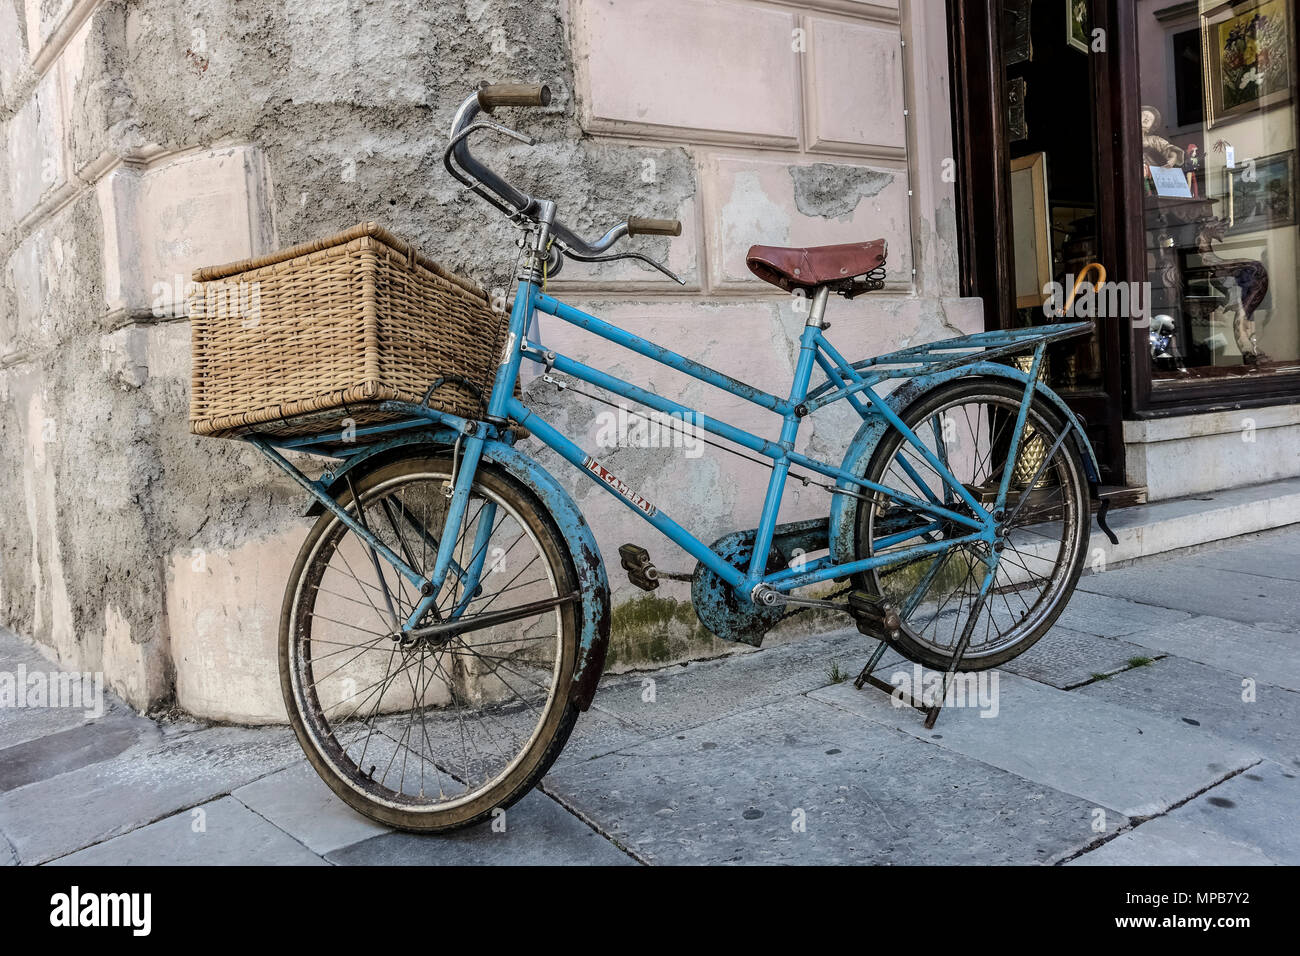 Vieux vélo bleu clair avec panier de livraison, garé devant un magasin. Gorizia, Italie, Europe, Union européenne, UE. Banque D'Images